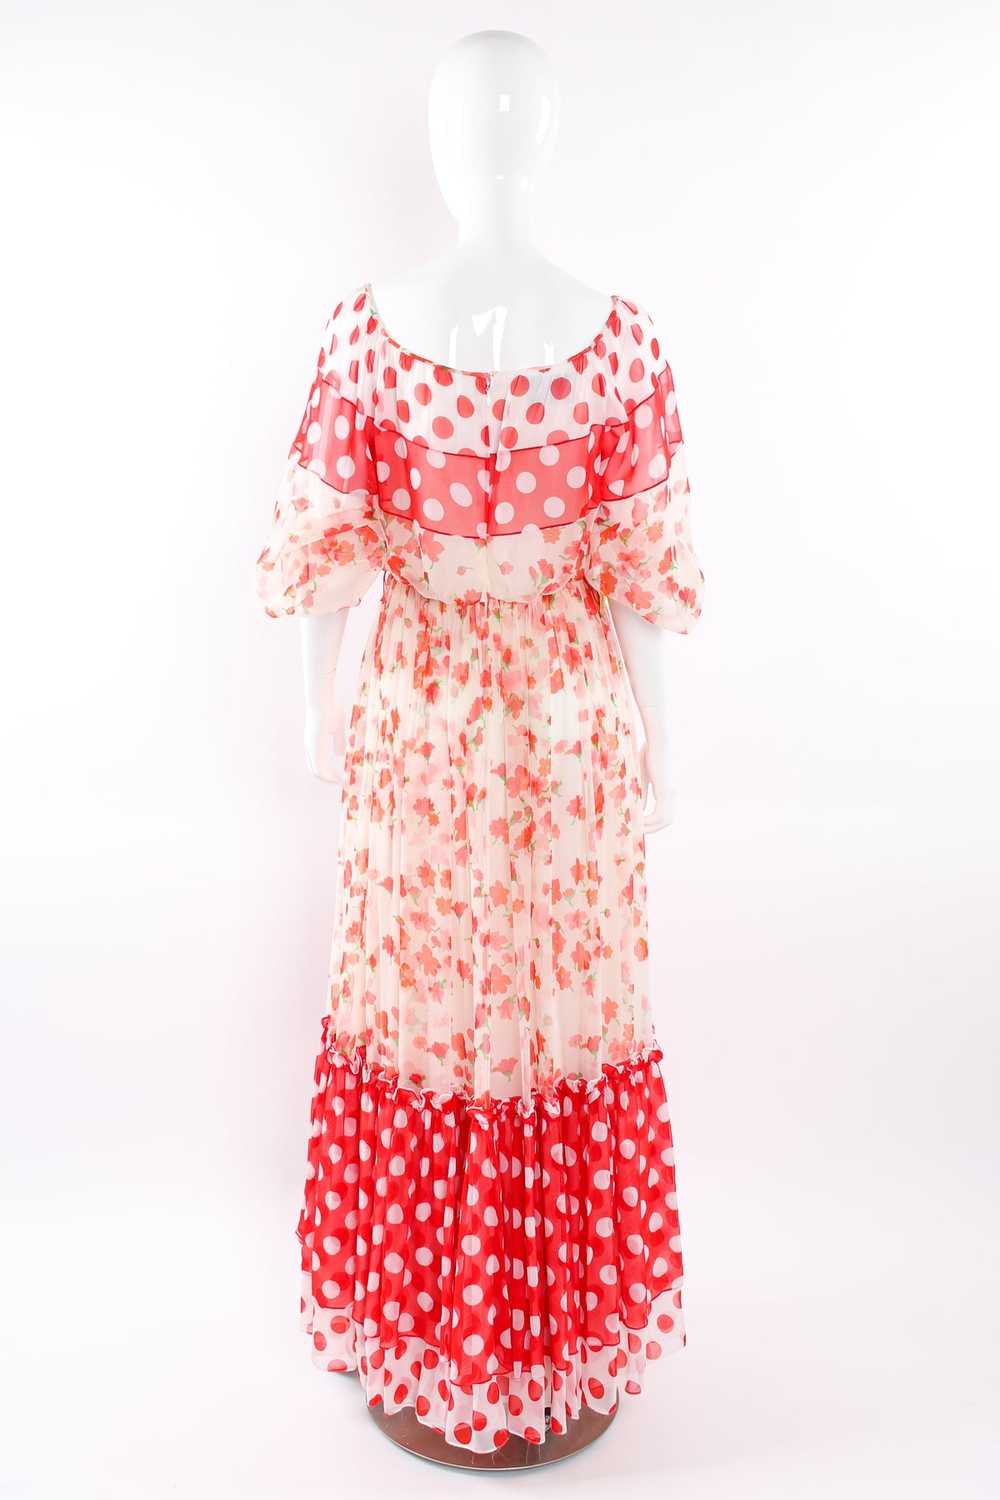 MIGNON Blooming Polka Dot Dress - image 10